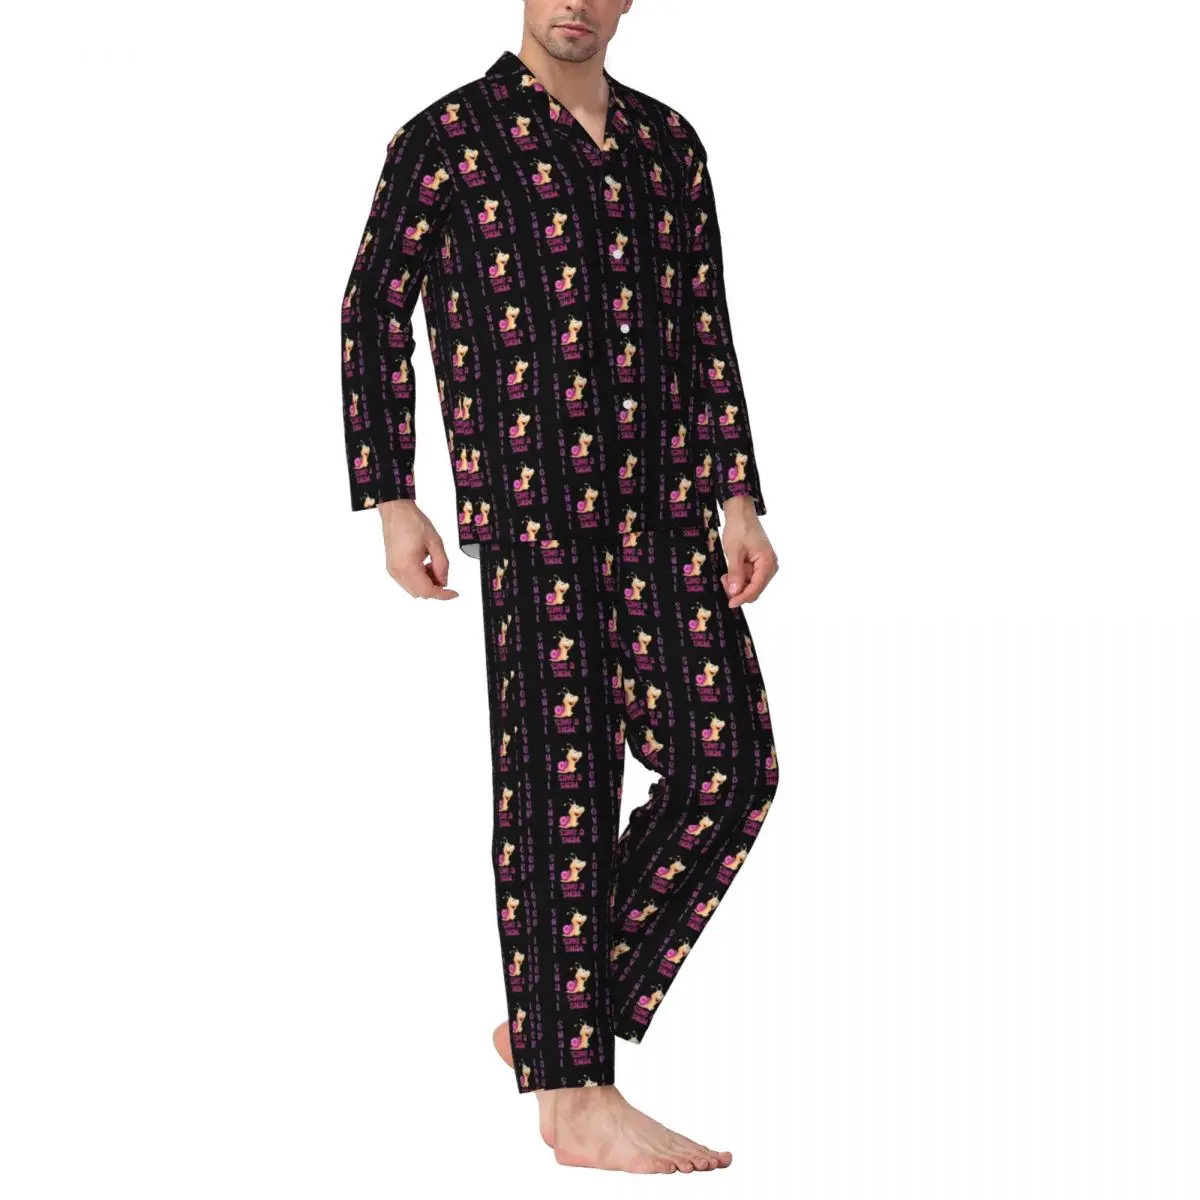 

Пижама Мужская с принтом улитки, одежда для сна для влюбленных, милая Повседневная Пижама из 2 предметов с животным принтом, милый мягкий домашний костюм оверсайз с длинным рукавом